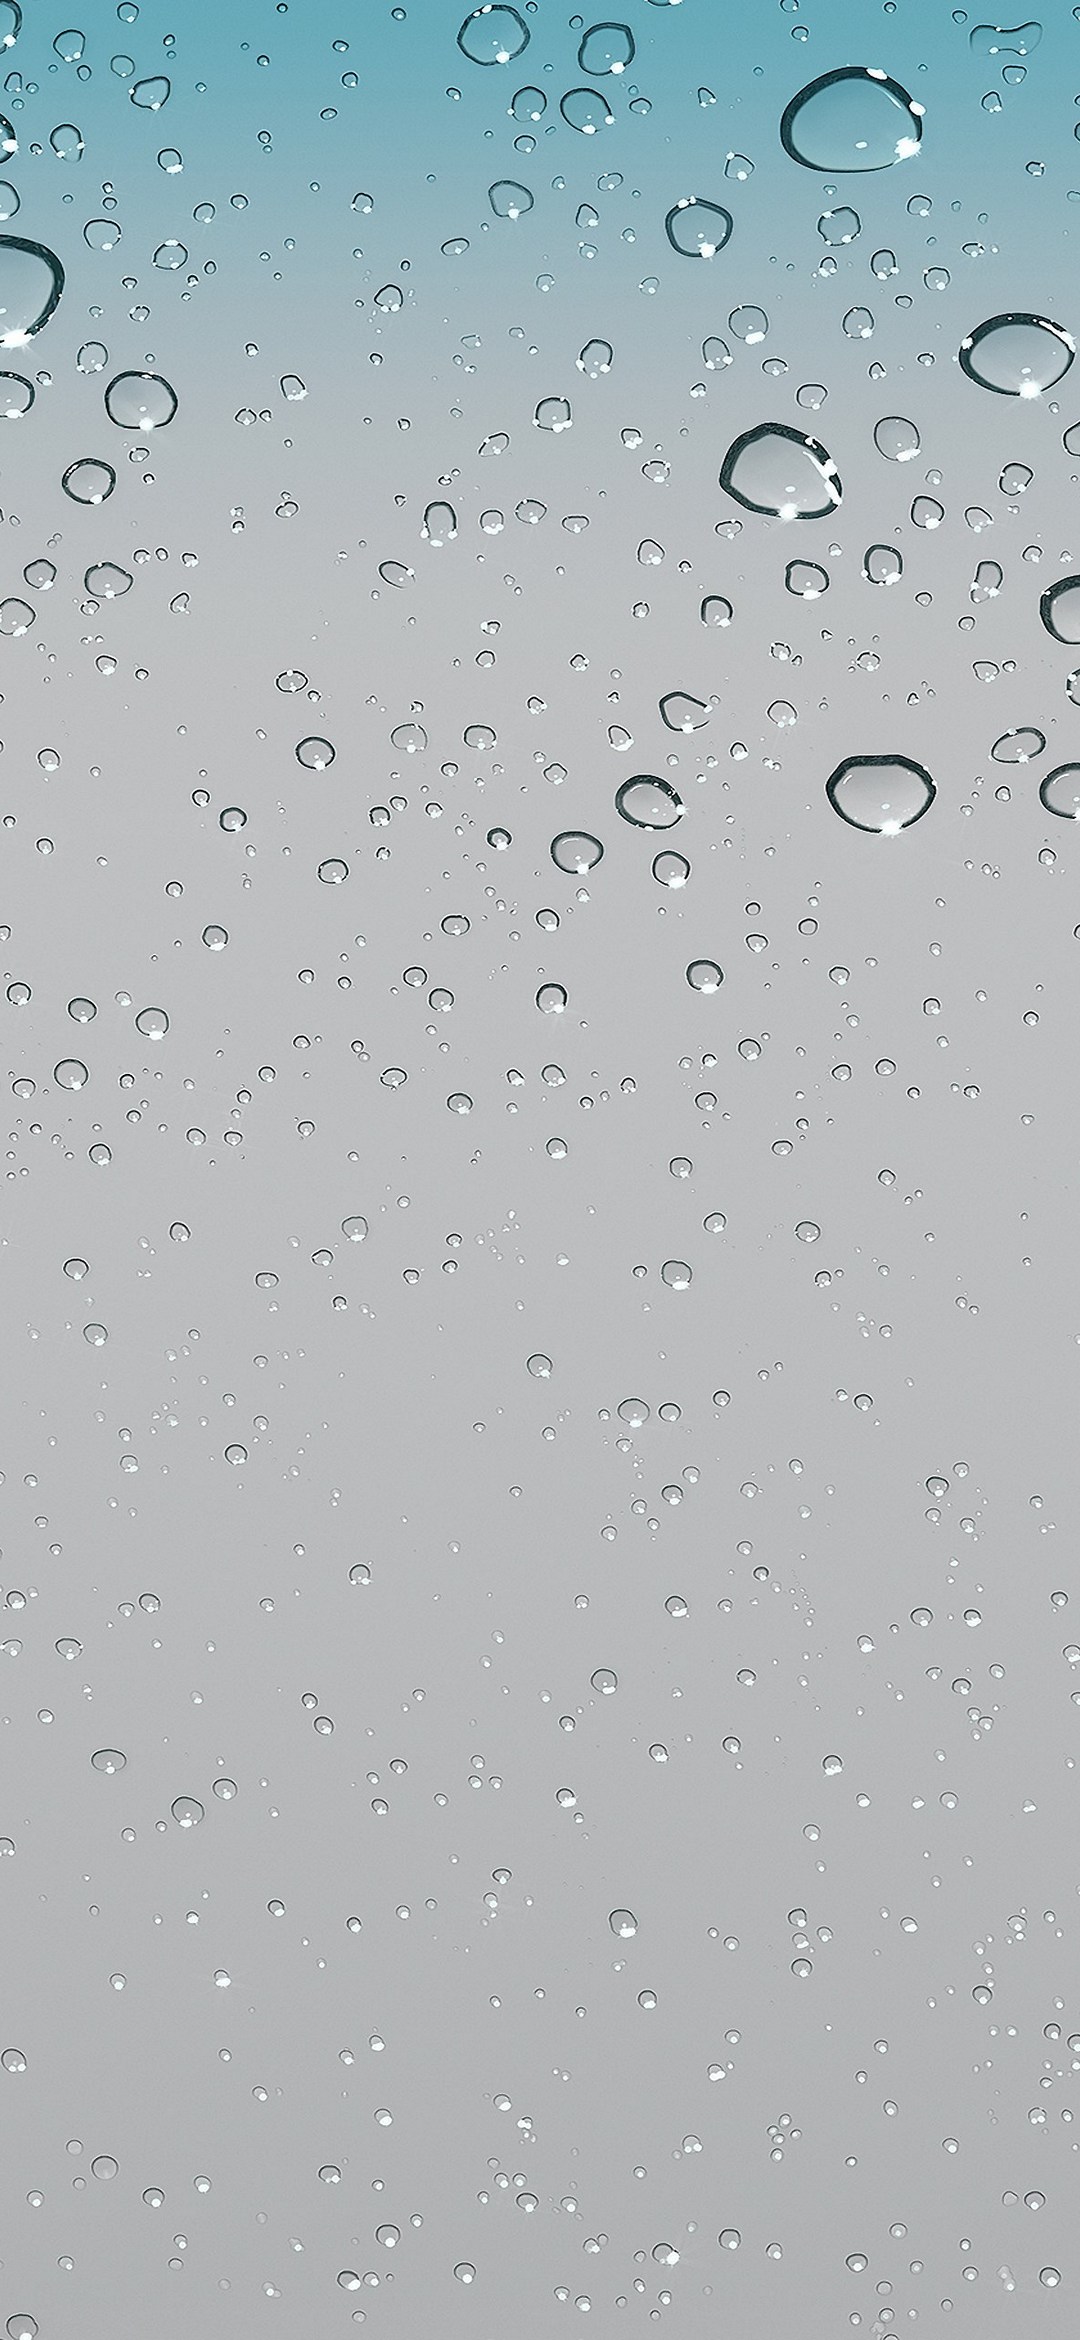 沢山の水滴がついた綺麗なガラス 水色 灰色 Rog Phone 3 Android 壁紙 待ち受け Sumaran